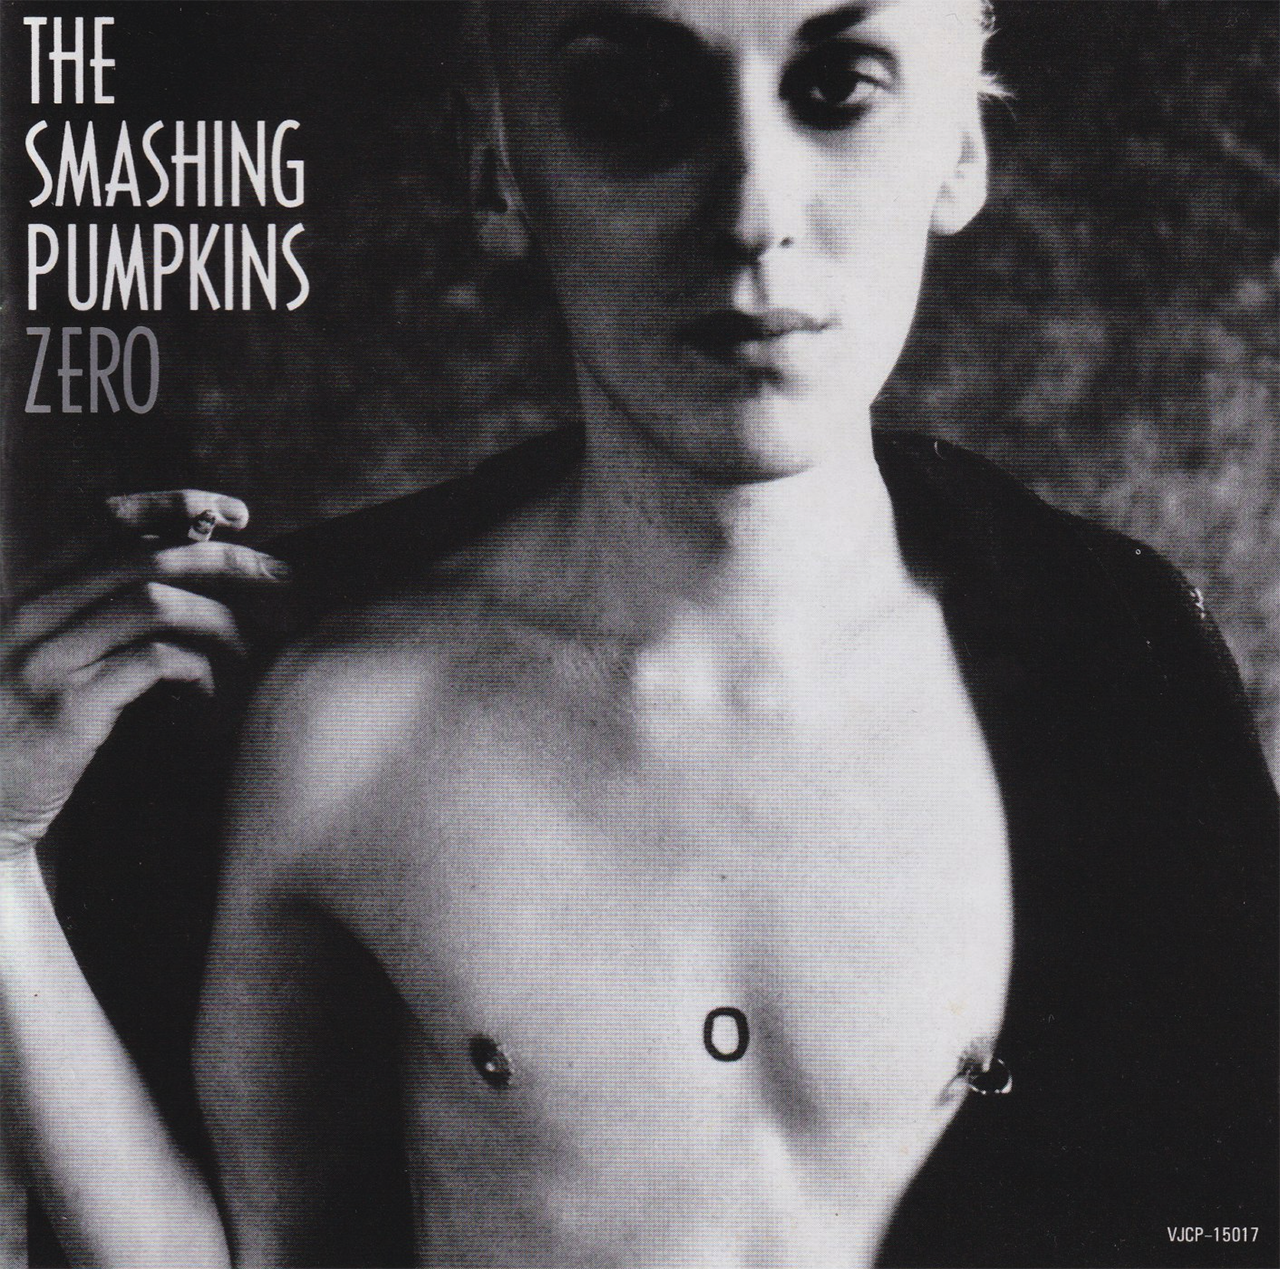 ZERO / THE SMASHING PUMPKINS